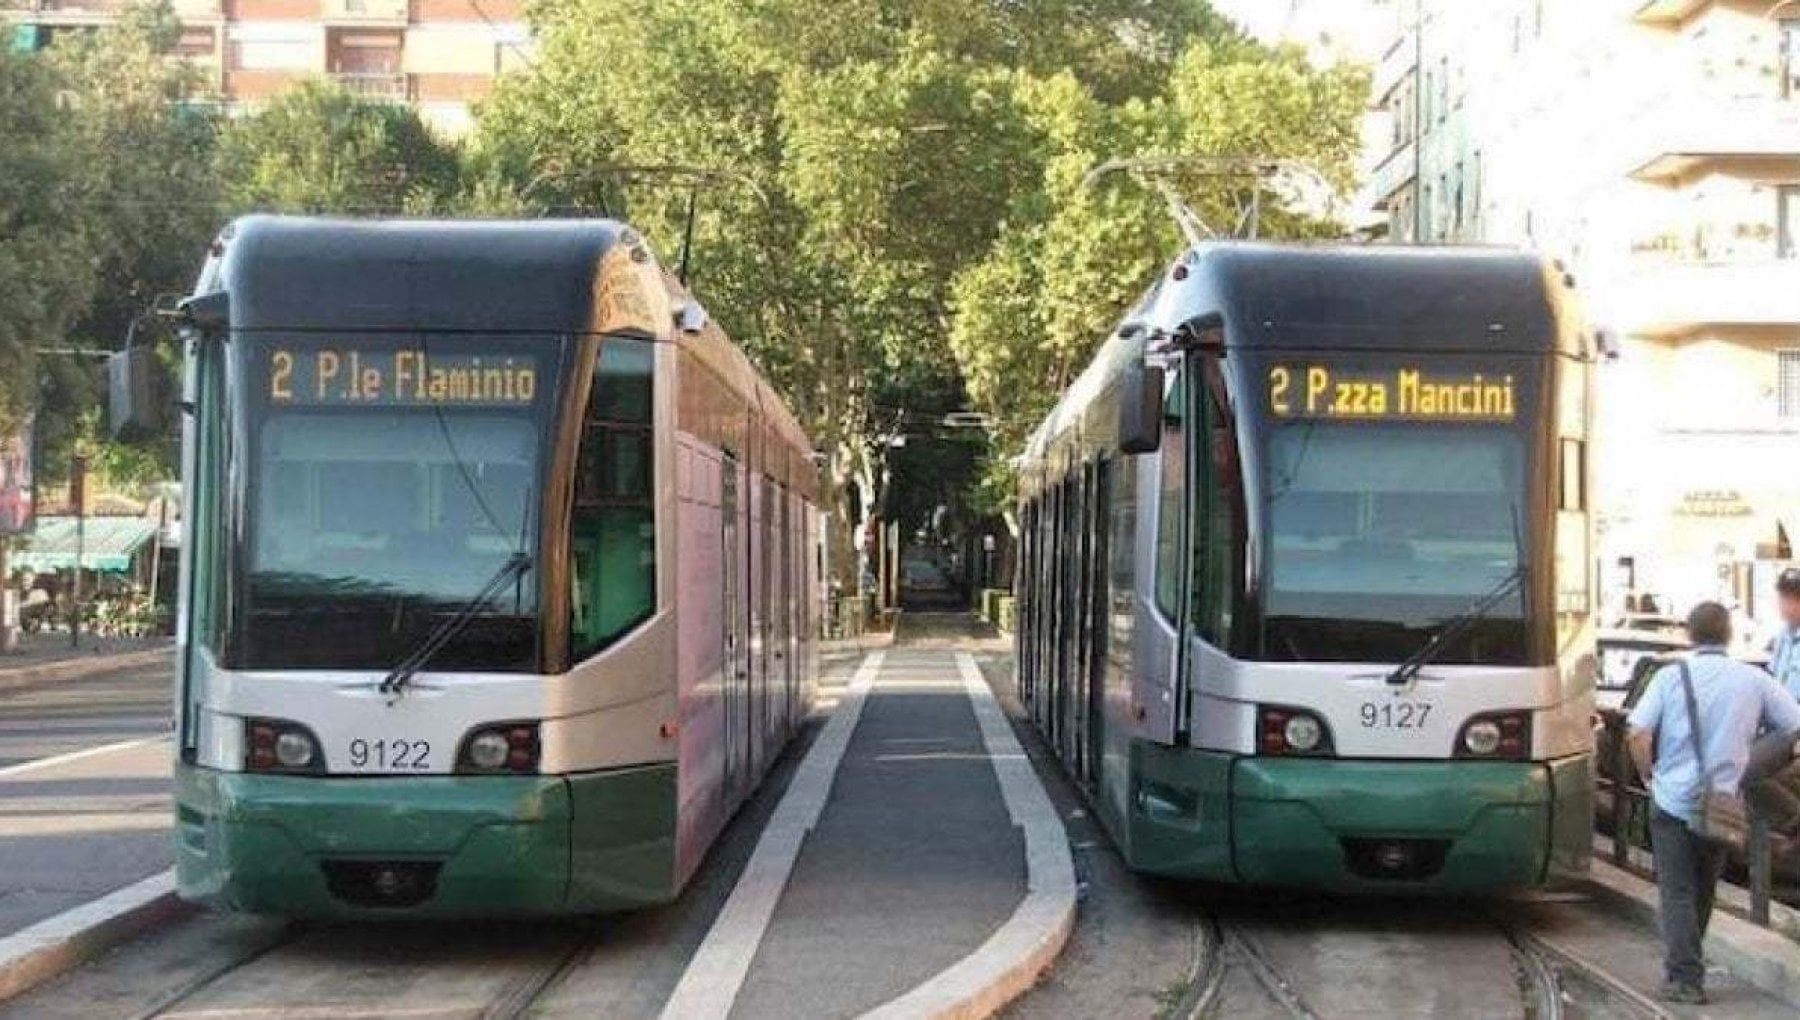 Roma, rete tramviaria stravolta per via di alcuni lavori con conseguenti modifiche alla viabilità, deviazioni e bus sostitutivi.